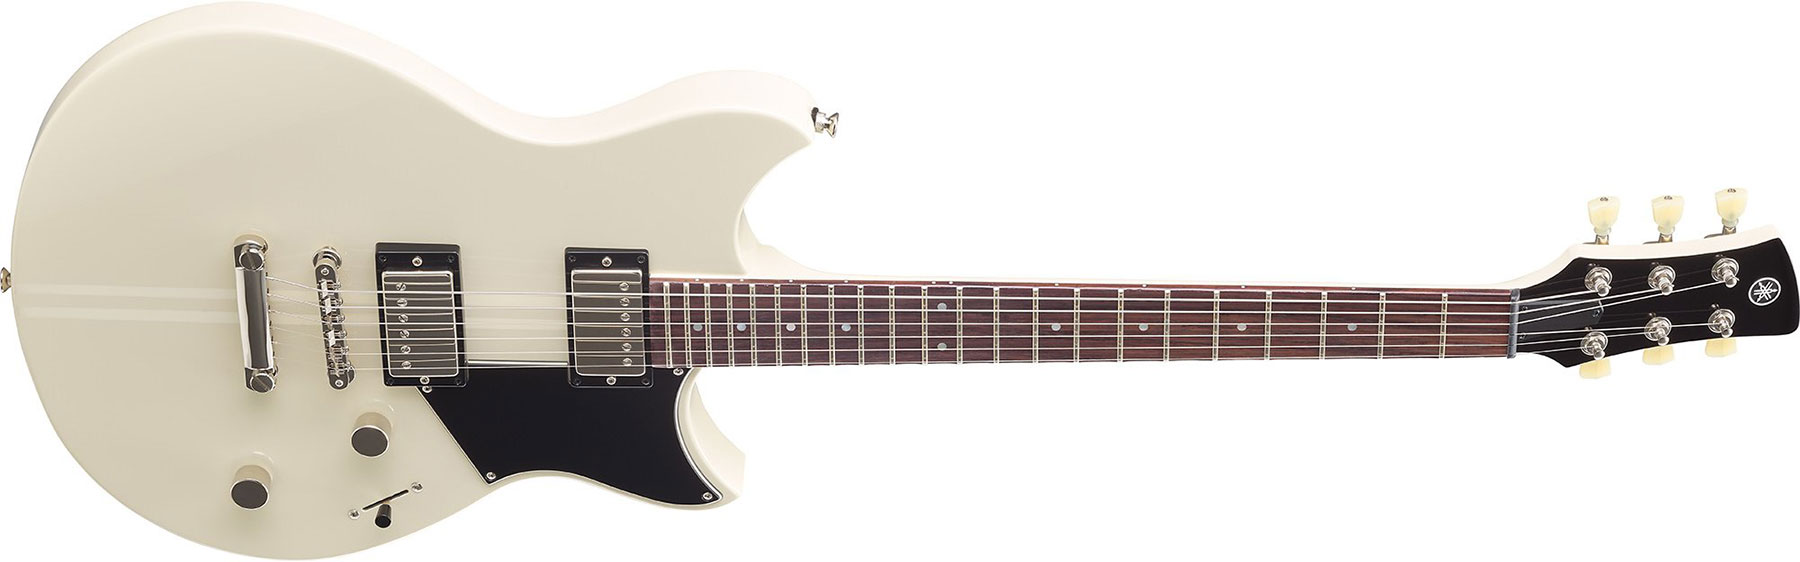 Yamaha Rse20 Revstar Element Hh Ht Rw - Vintage White - Guitarra eléctrica de doble corte. - Variation 1